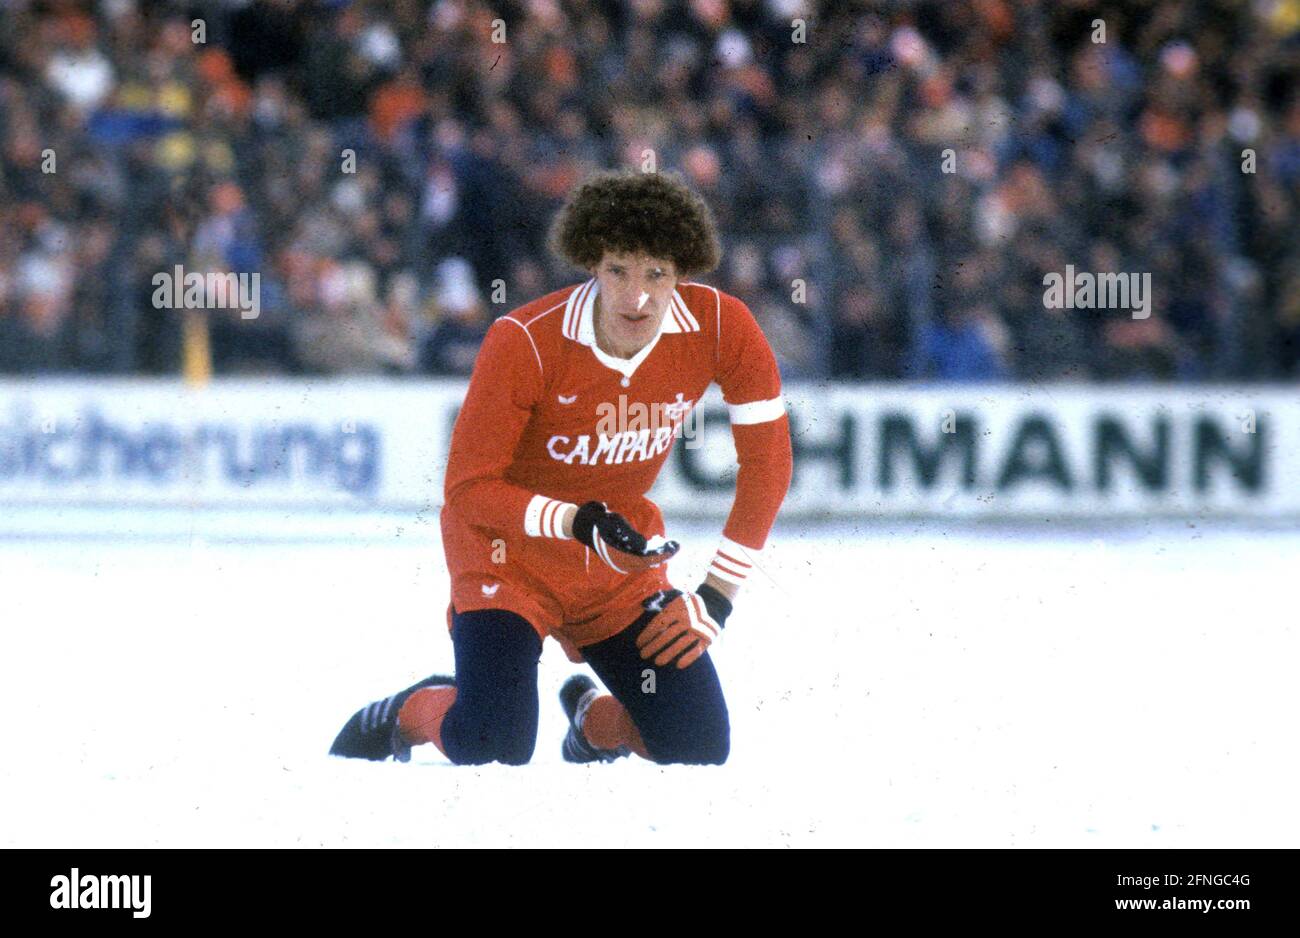 Football Bundesliga season 197879: VFB Stuttgart - 1. FC Kaiserslautern 3:0 on snow ground on 13.01.1979 Klaus Toppmöller kneeling in the snow (FCK) [automated translation] Stock Photo